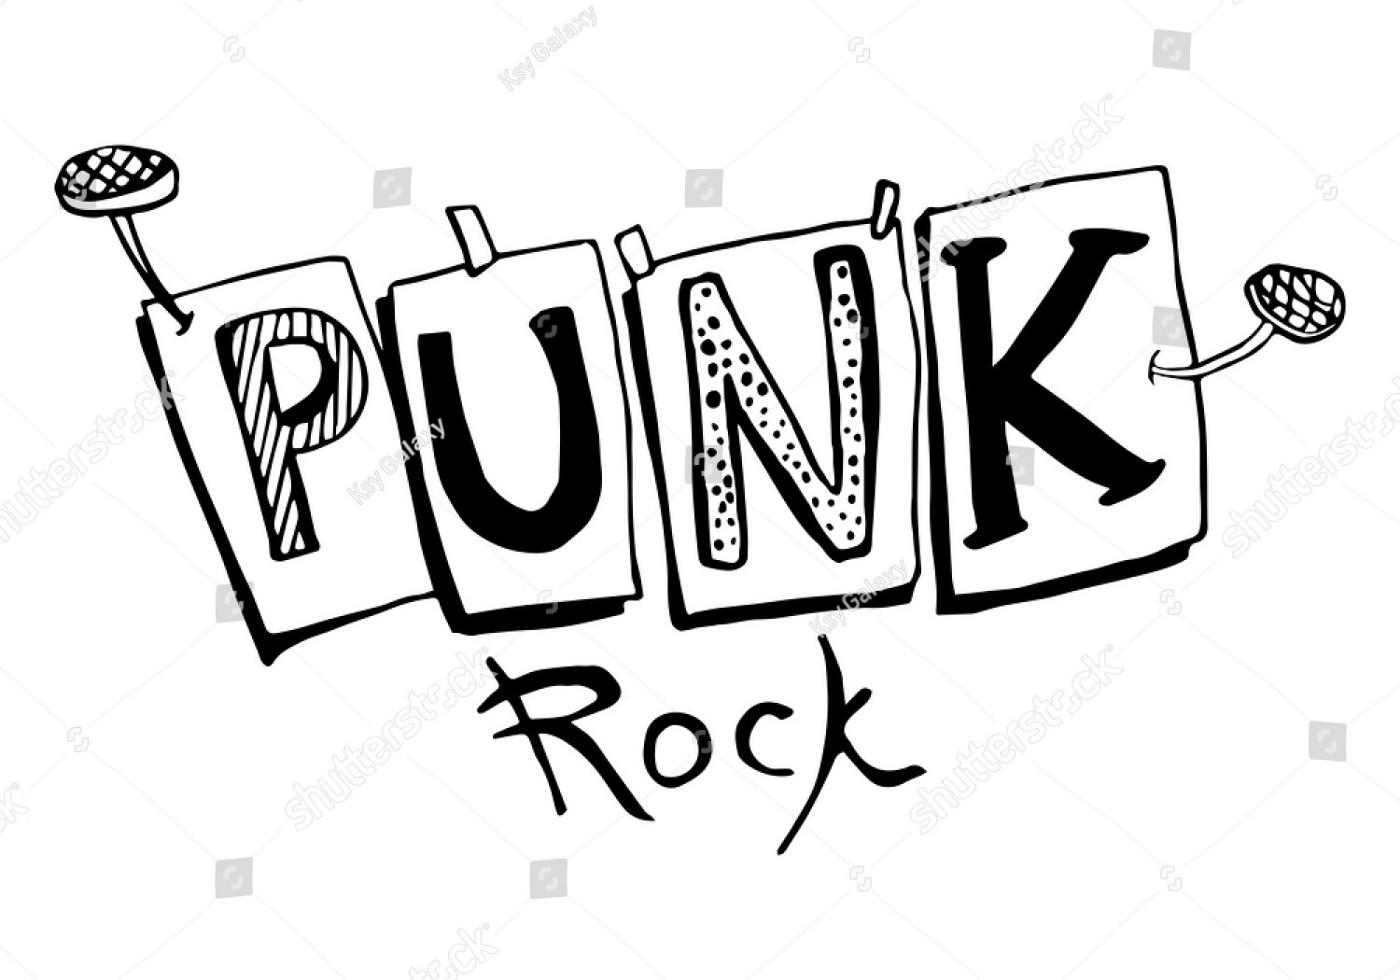 Punk Logo - LOGOS que marcaron la historia del [PUNK] ROCK - PUNK-ROCK Tuesdays